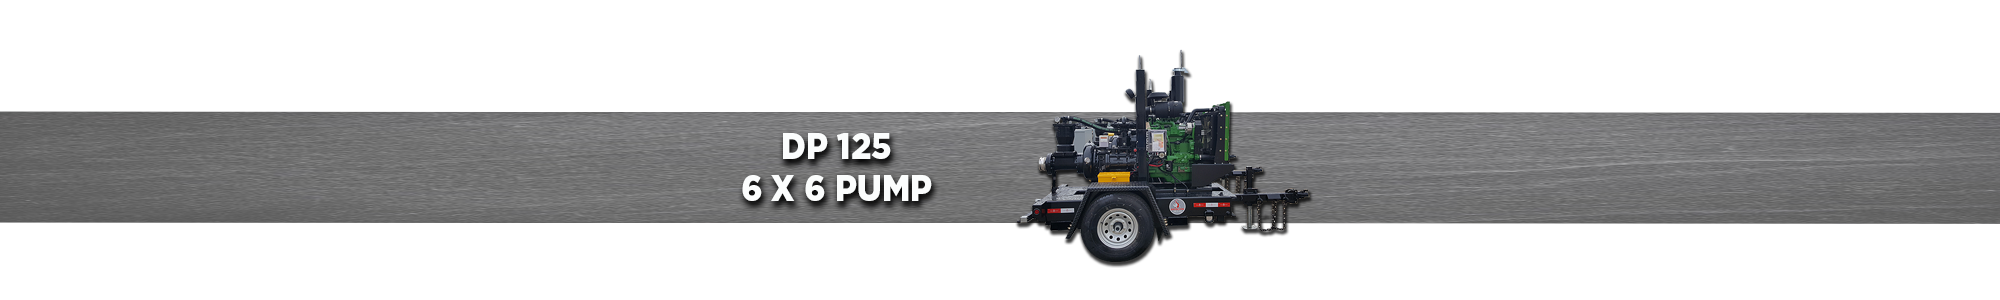 DP125 6x6 Pump